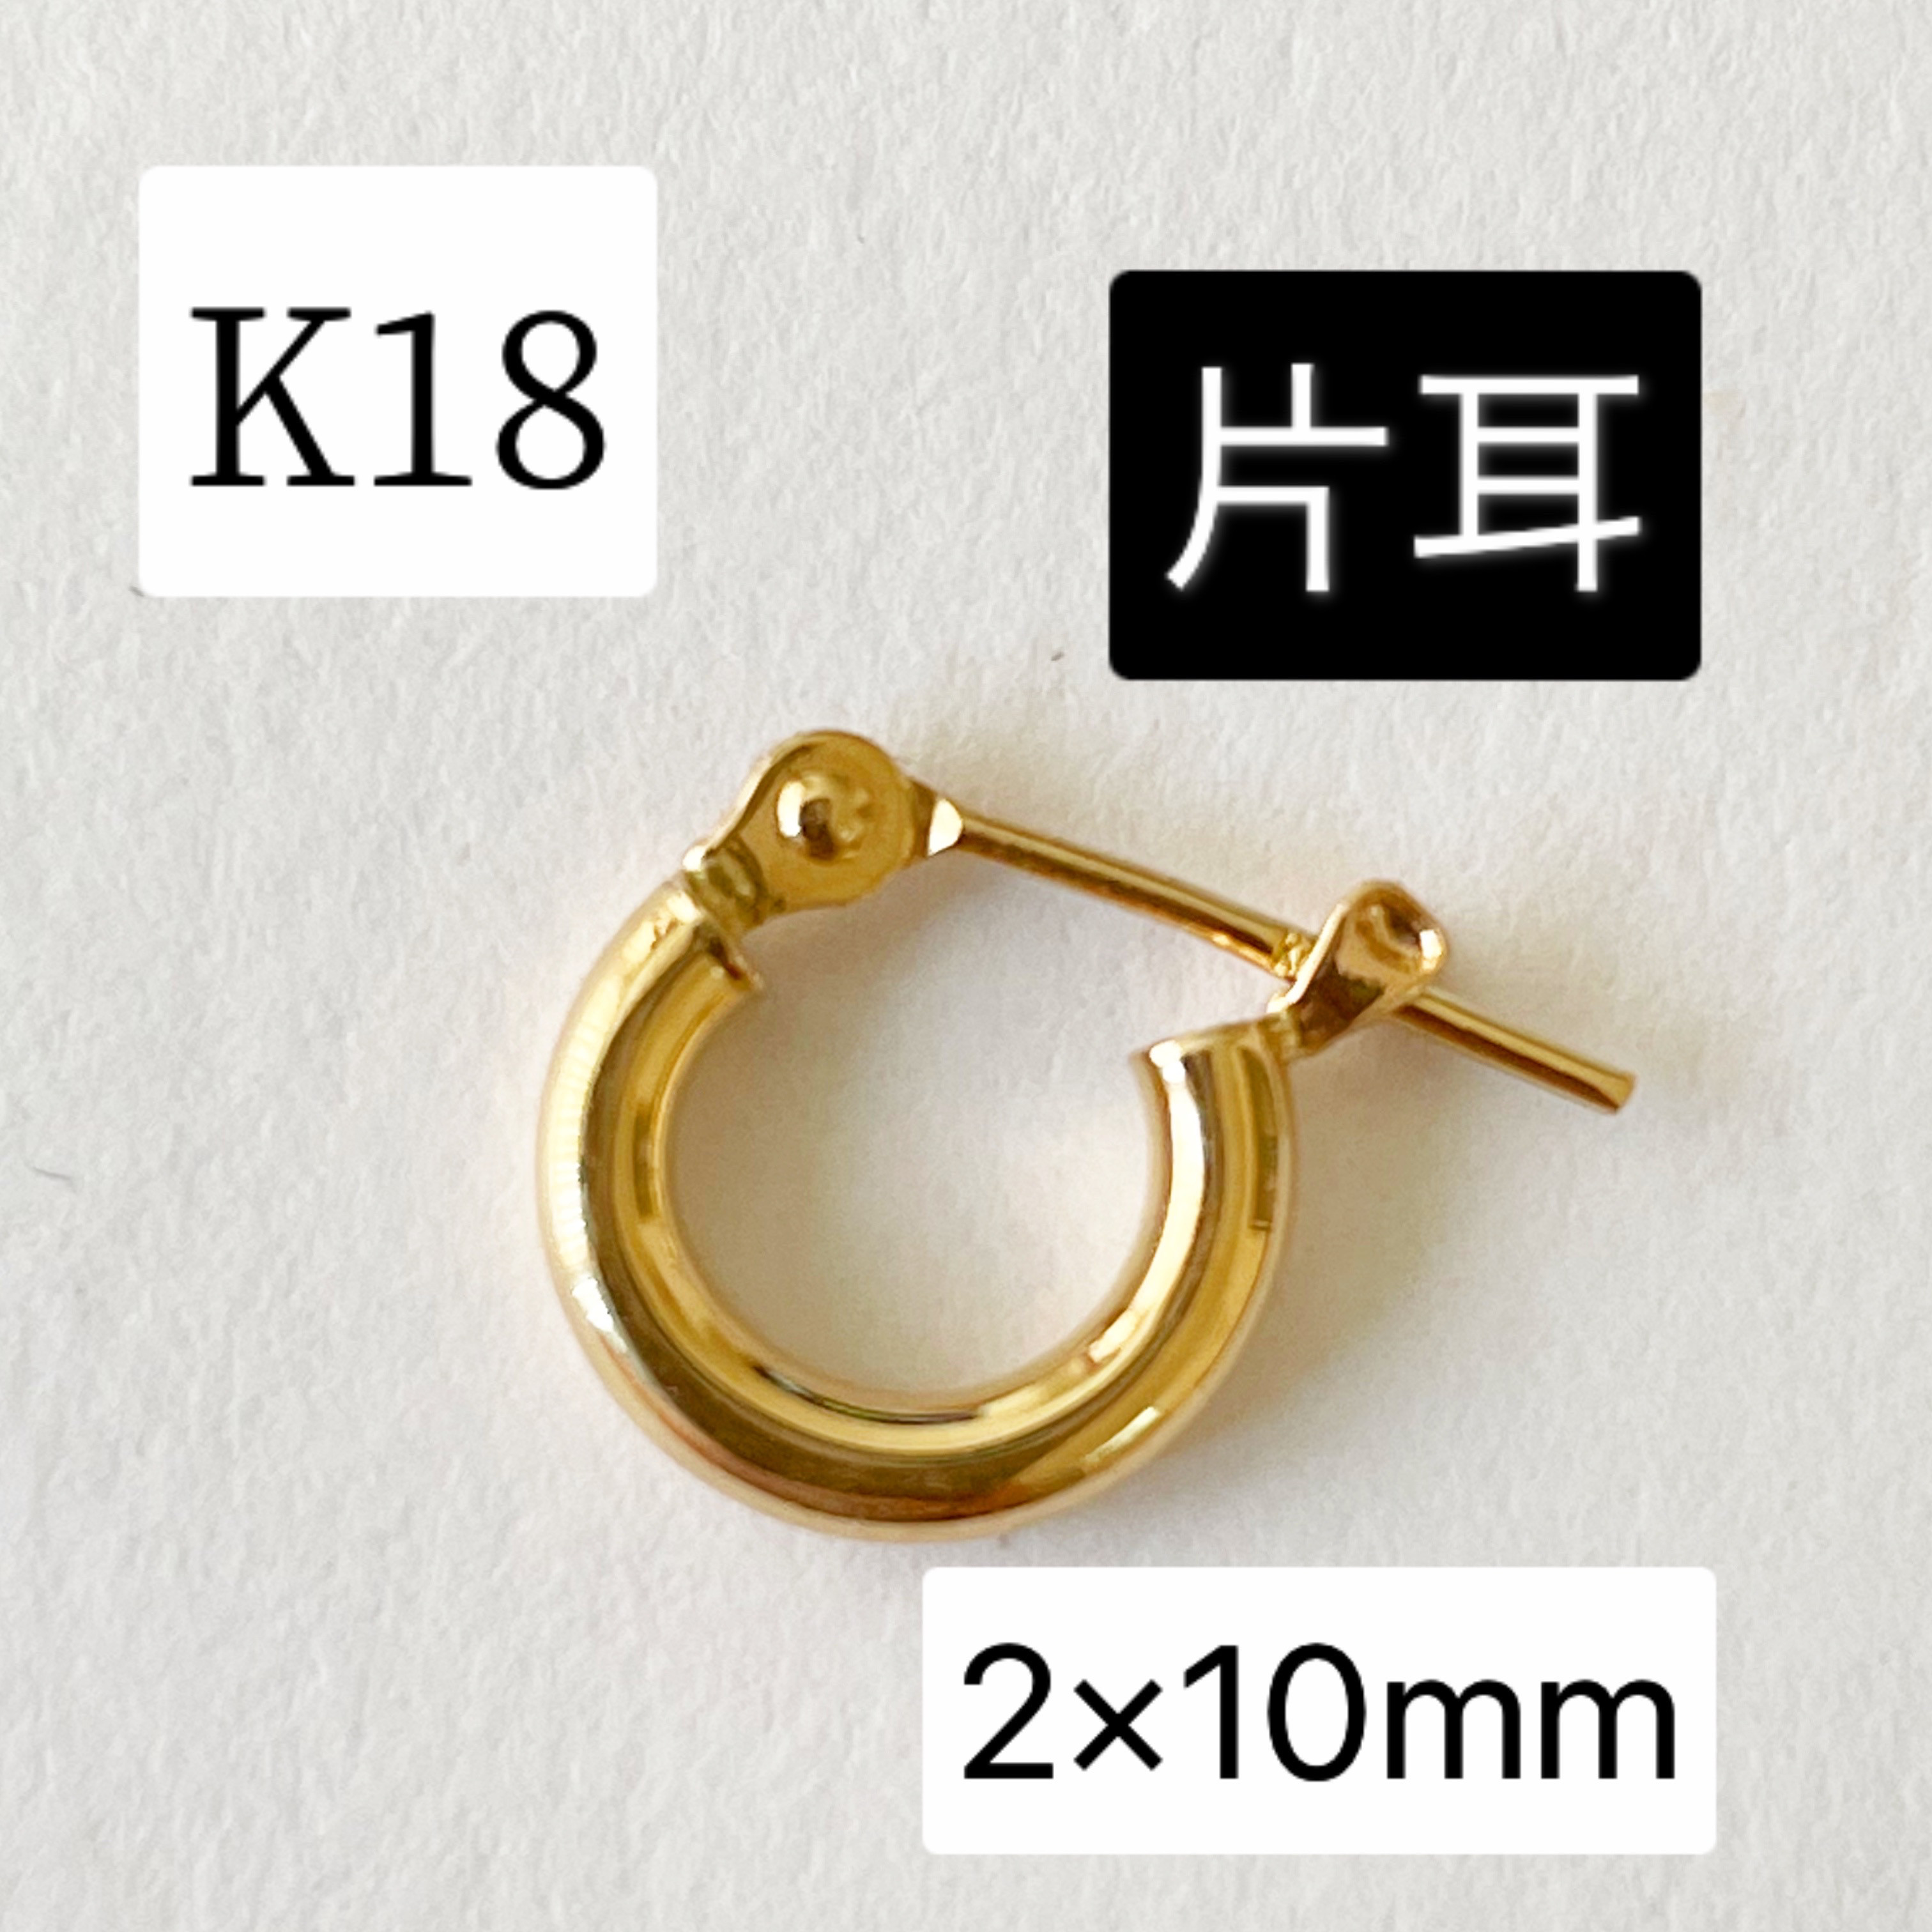 K18 フープピアス 2×10mm 18金 刻印入り本物 イエローゴールド 